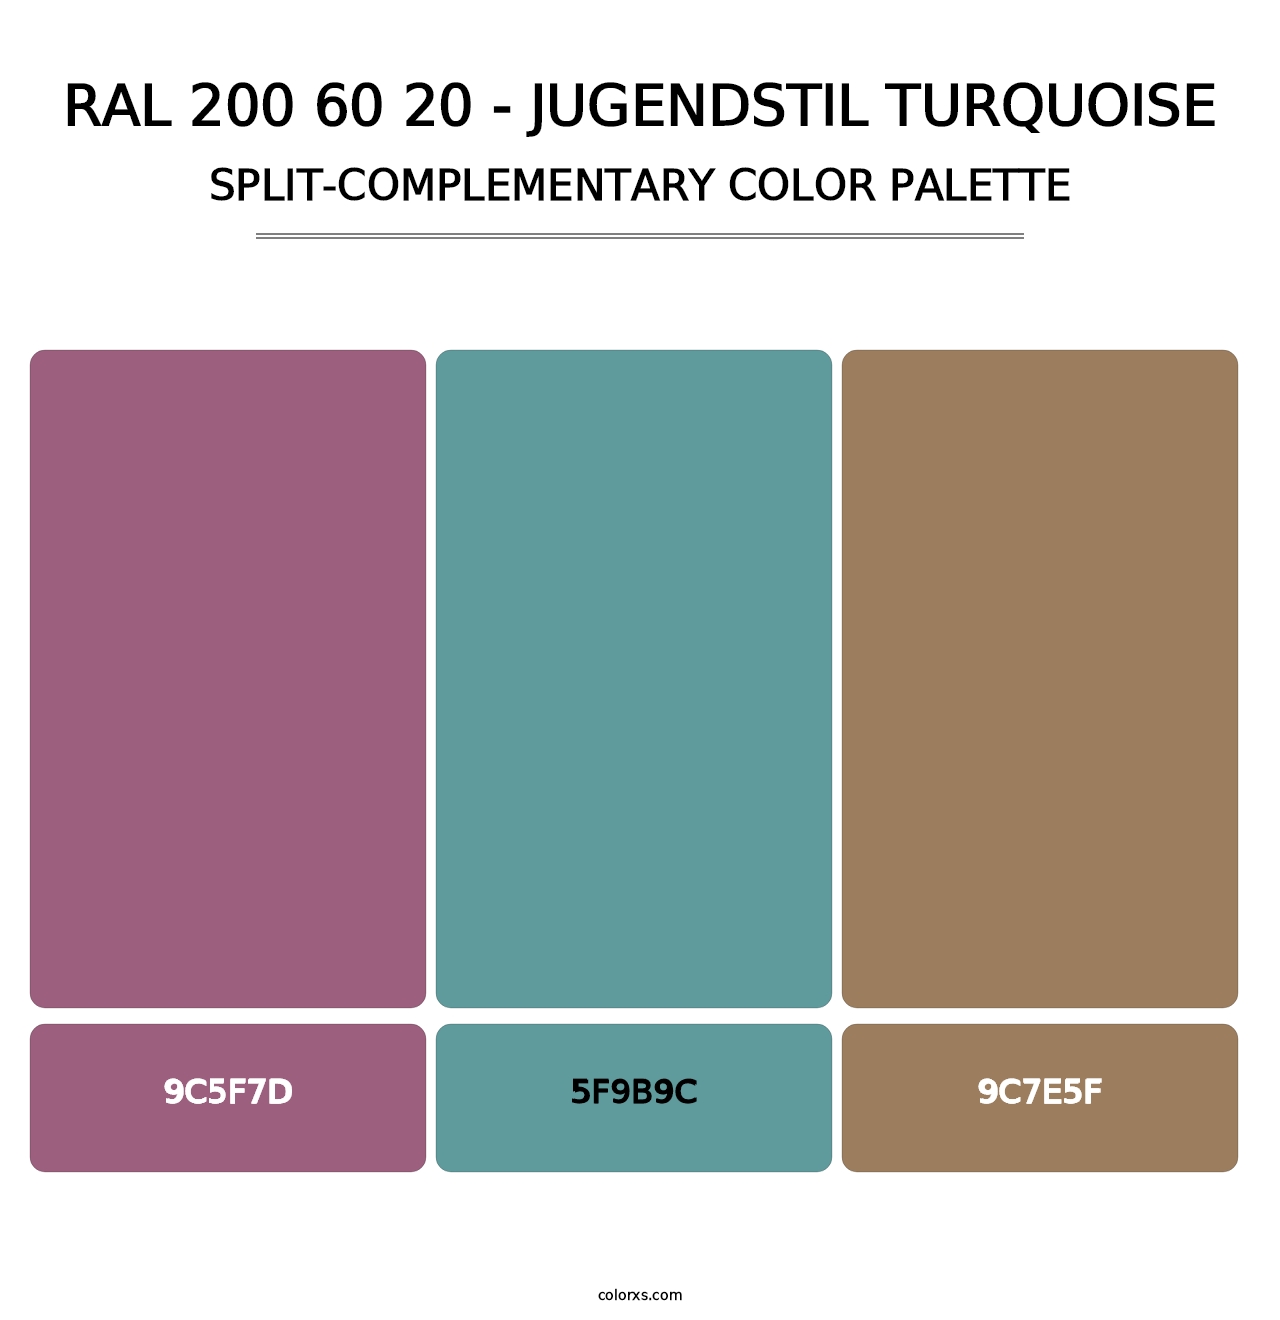 RAL 200 60 20 - Jugendstil Turquoise - Split-Complementary Color Palette